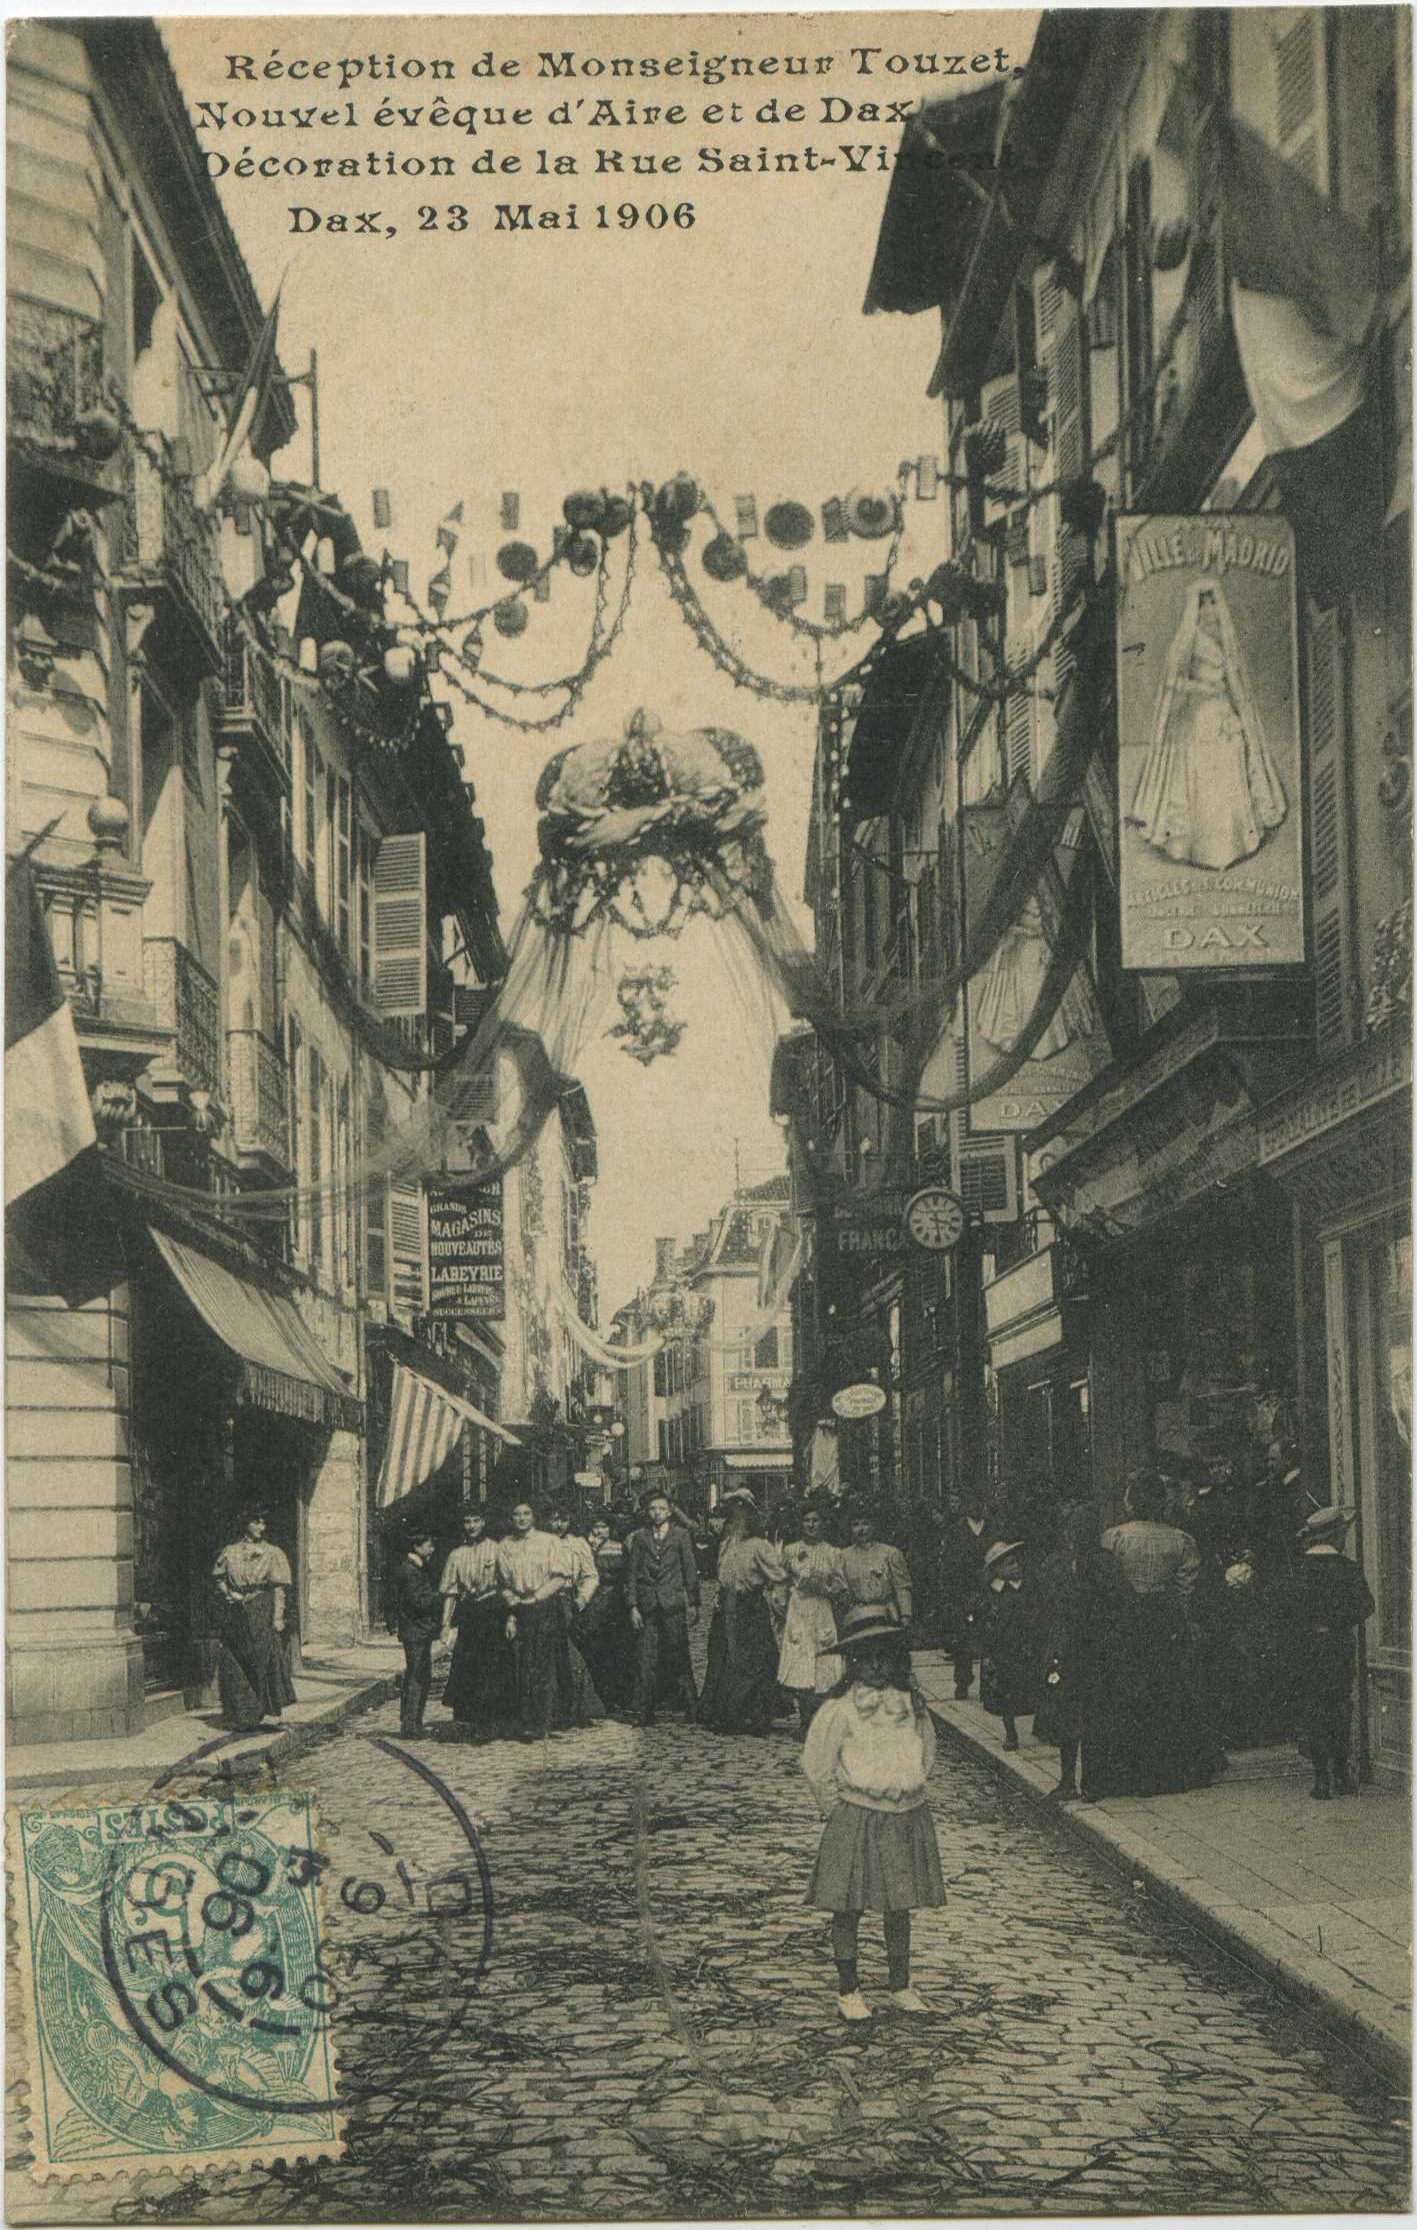 Dax - Dax, 23 Mai 1906 - Réception de Monseigneur Touzet, Nouvel évêque d'Aire et de Dax - Décoration de la Rue Saint-Vincent